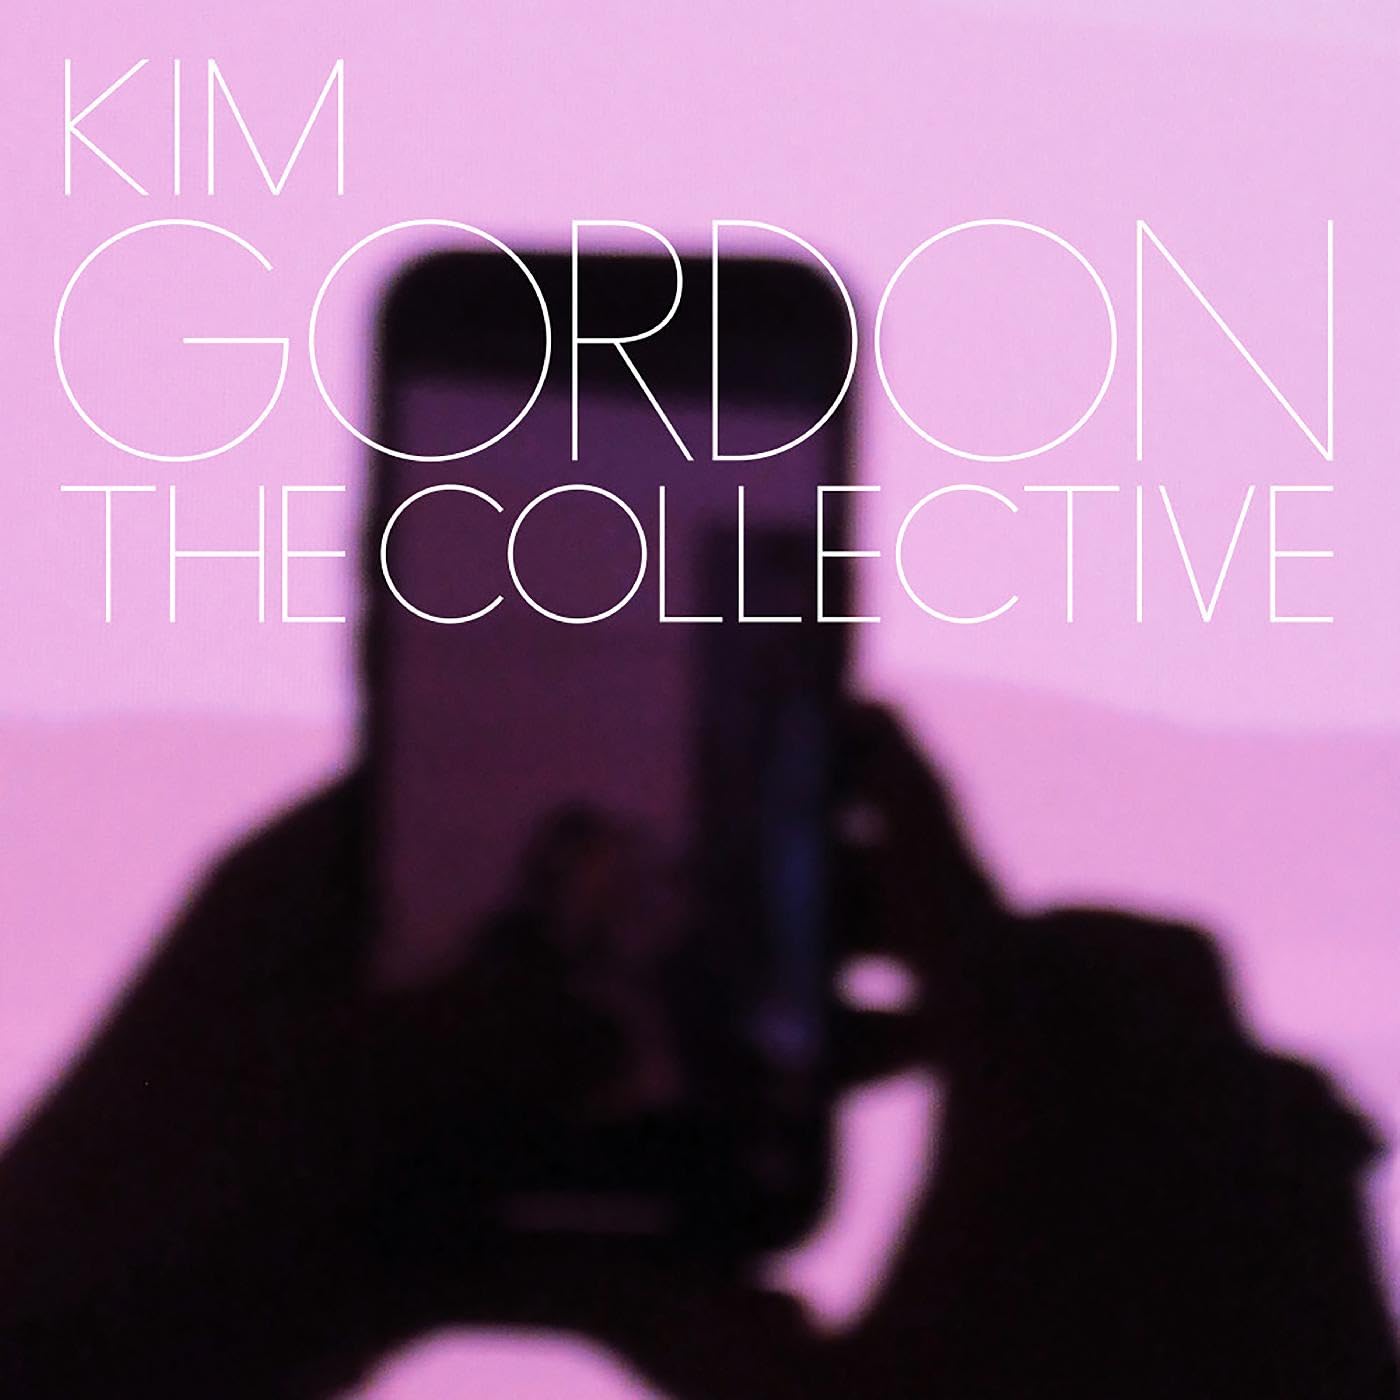 GORDON KIM – COLLECTIVE CD